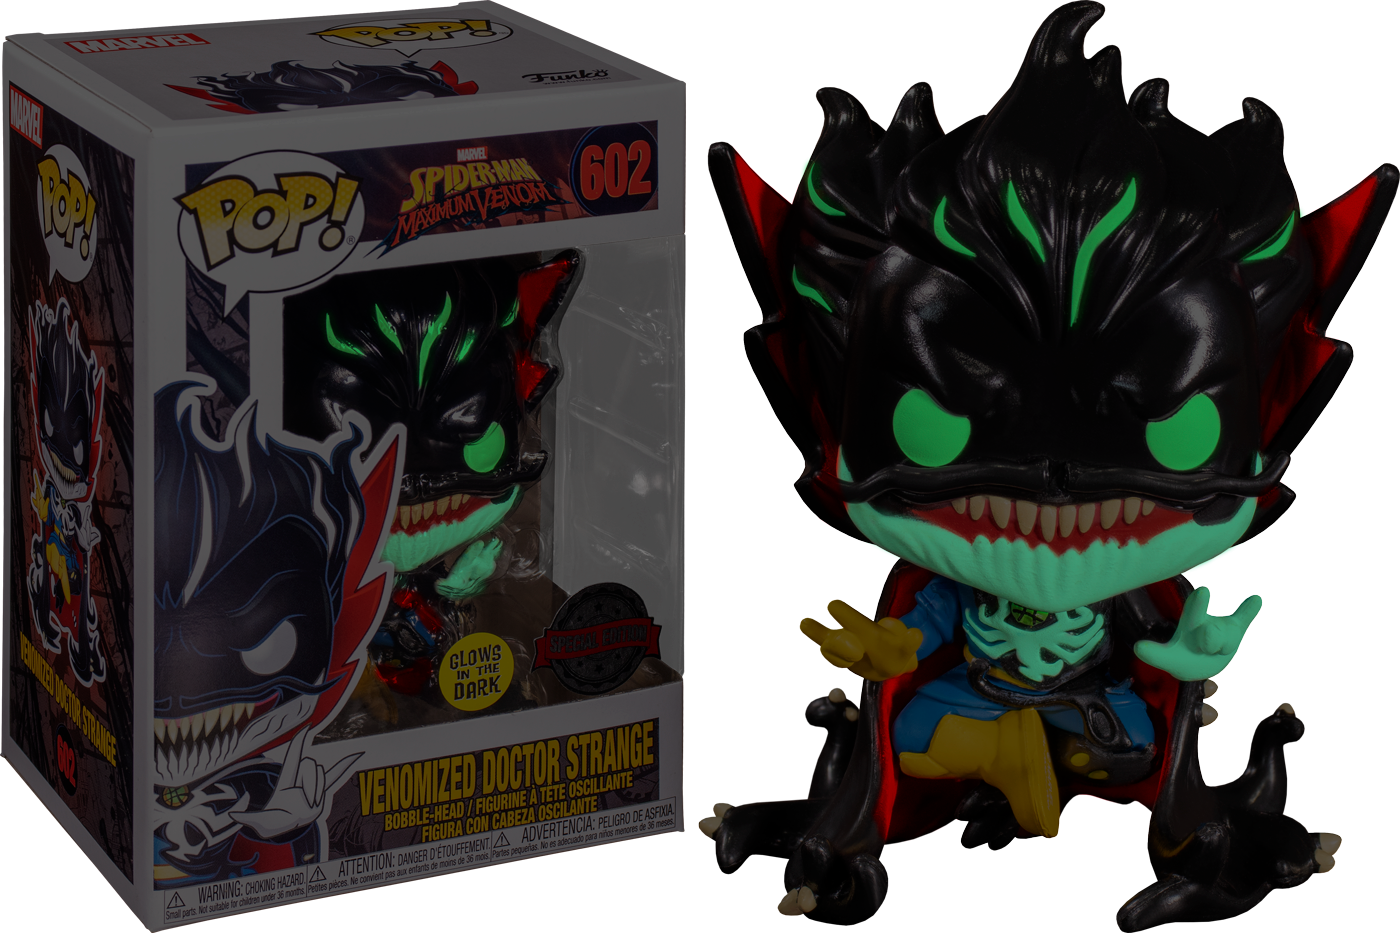 Funko Pop! Spider-Man: Maximum Venom - Doctor Strange Glow in the Dark #602